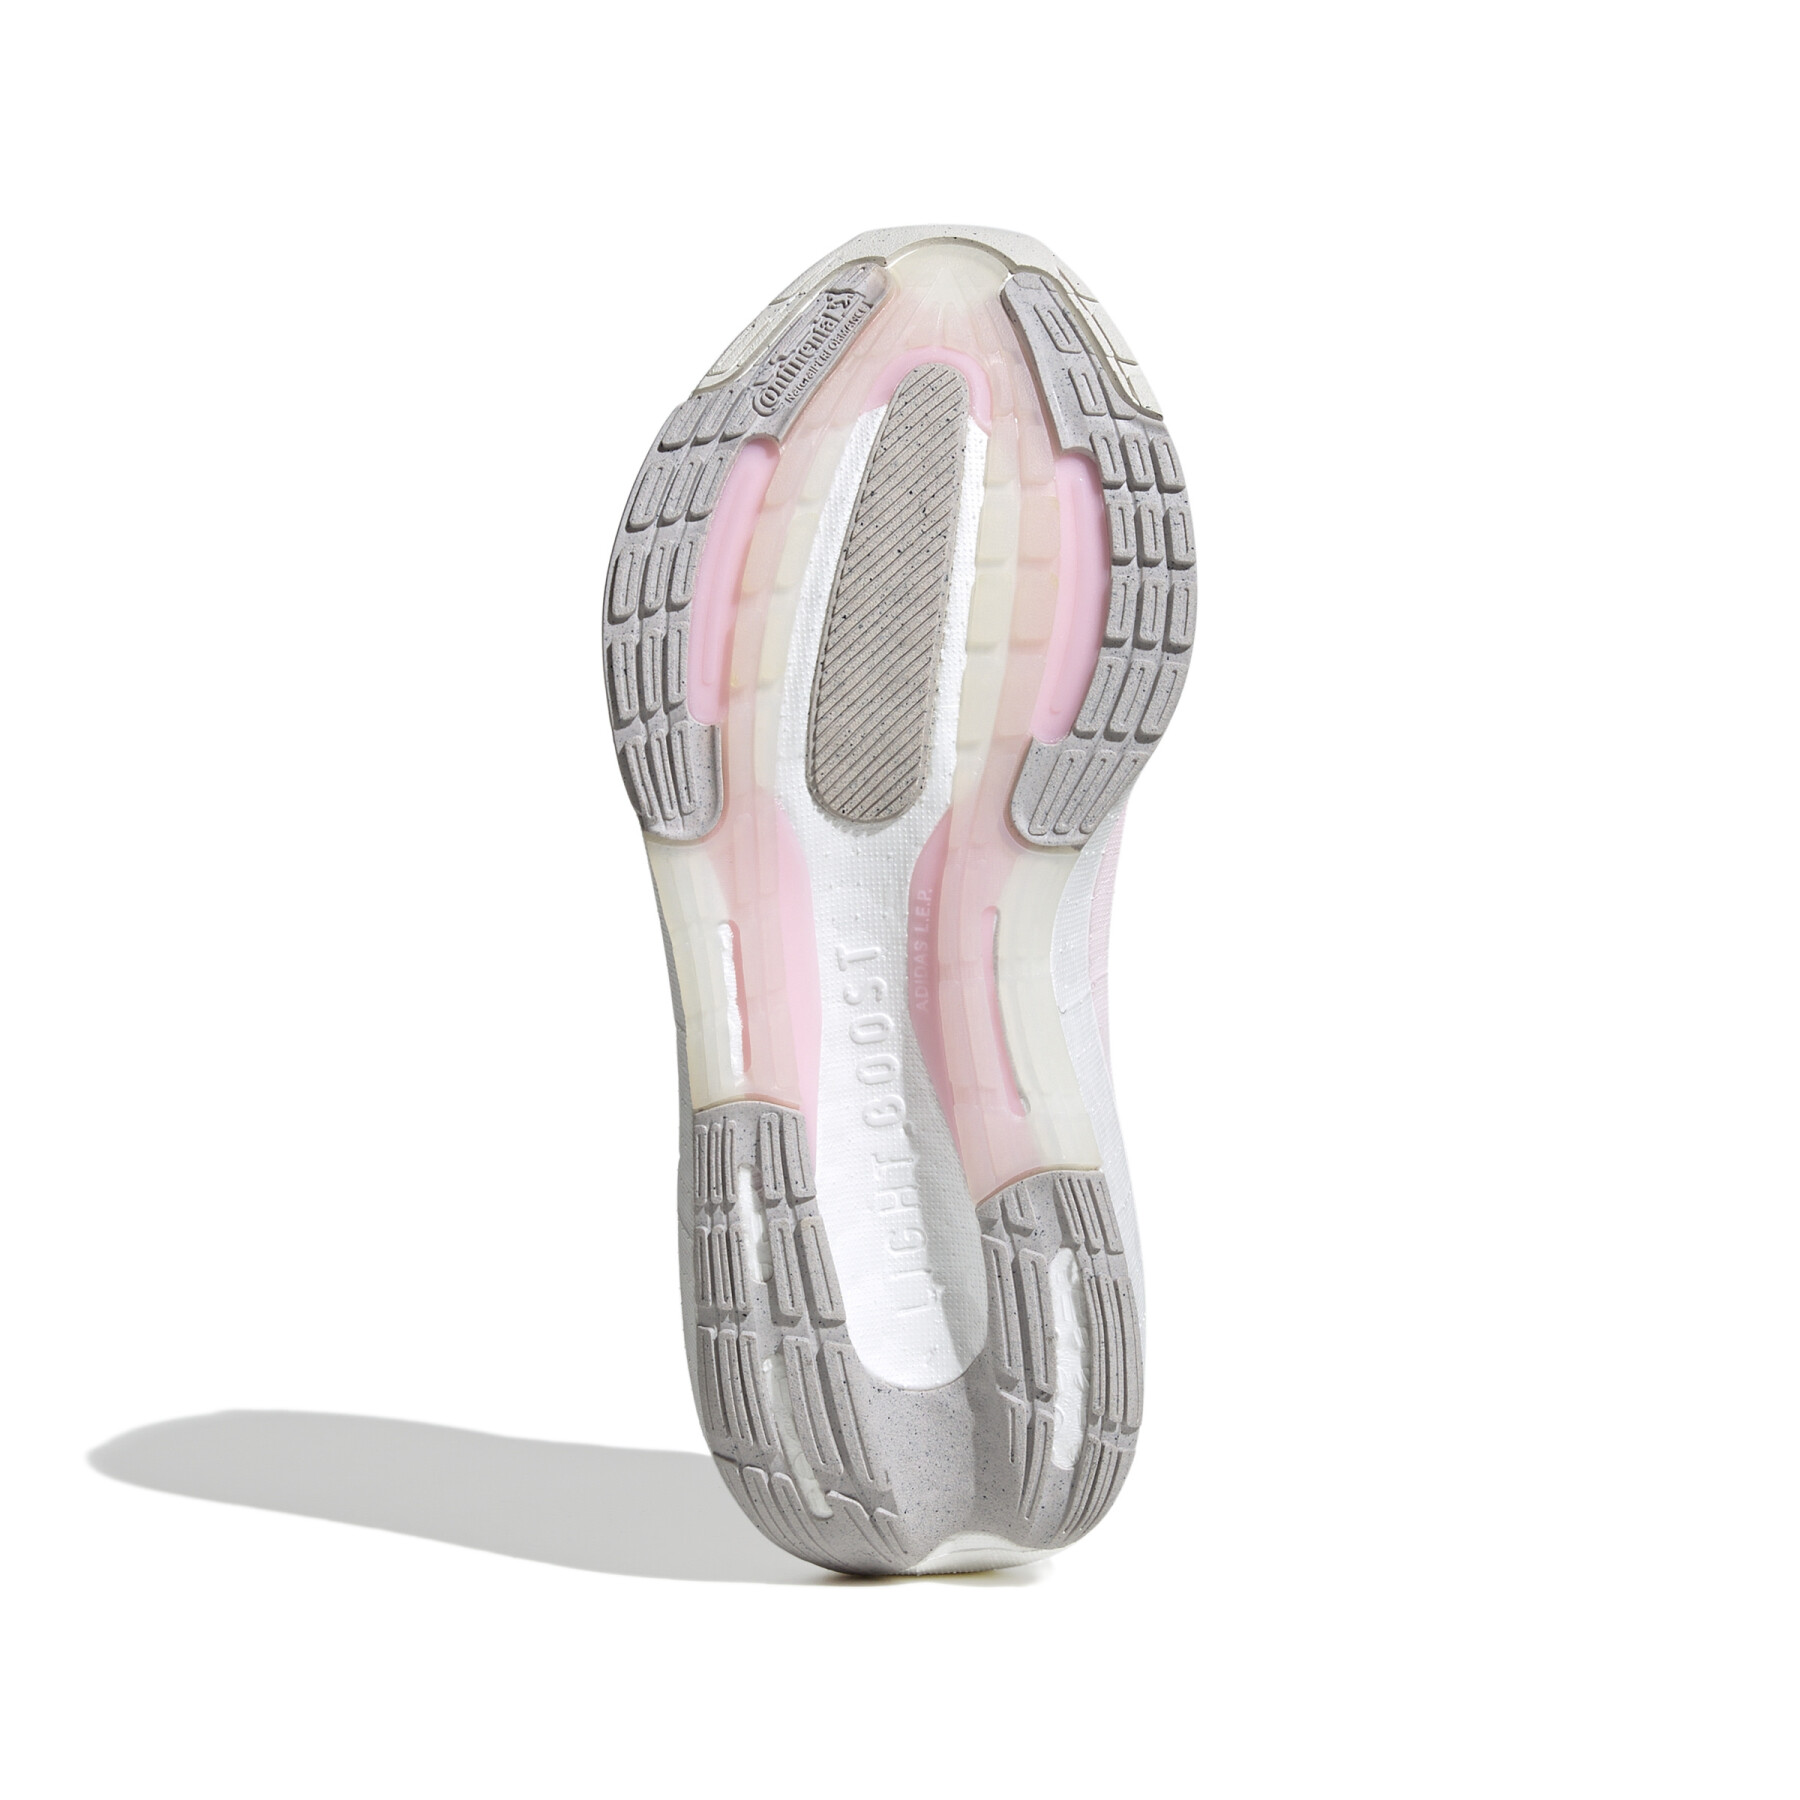 Women's running shoes adidas Ultraboost Light